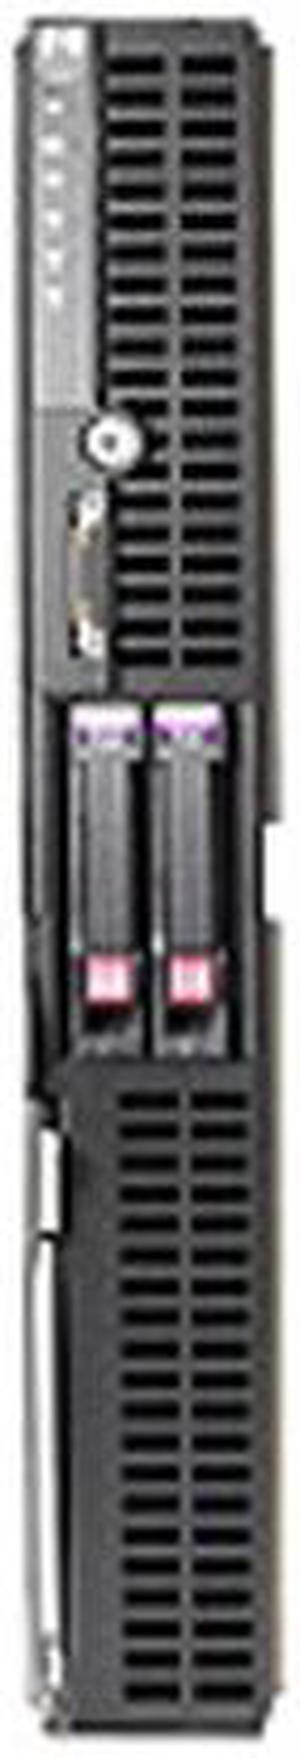 HP ProLiant BL685c Blade Dual AMD Opteron 8216 2.4 GHz 4 GB DDR2 Servers 2 x AMD Opteron Model 8216 (2.4 GHz) 4 GB (4 x 1 GB) 405660-B21